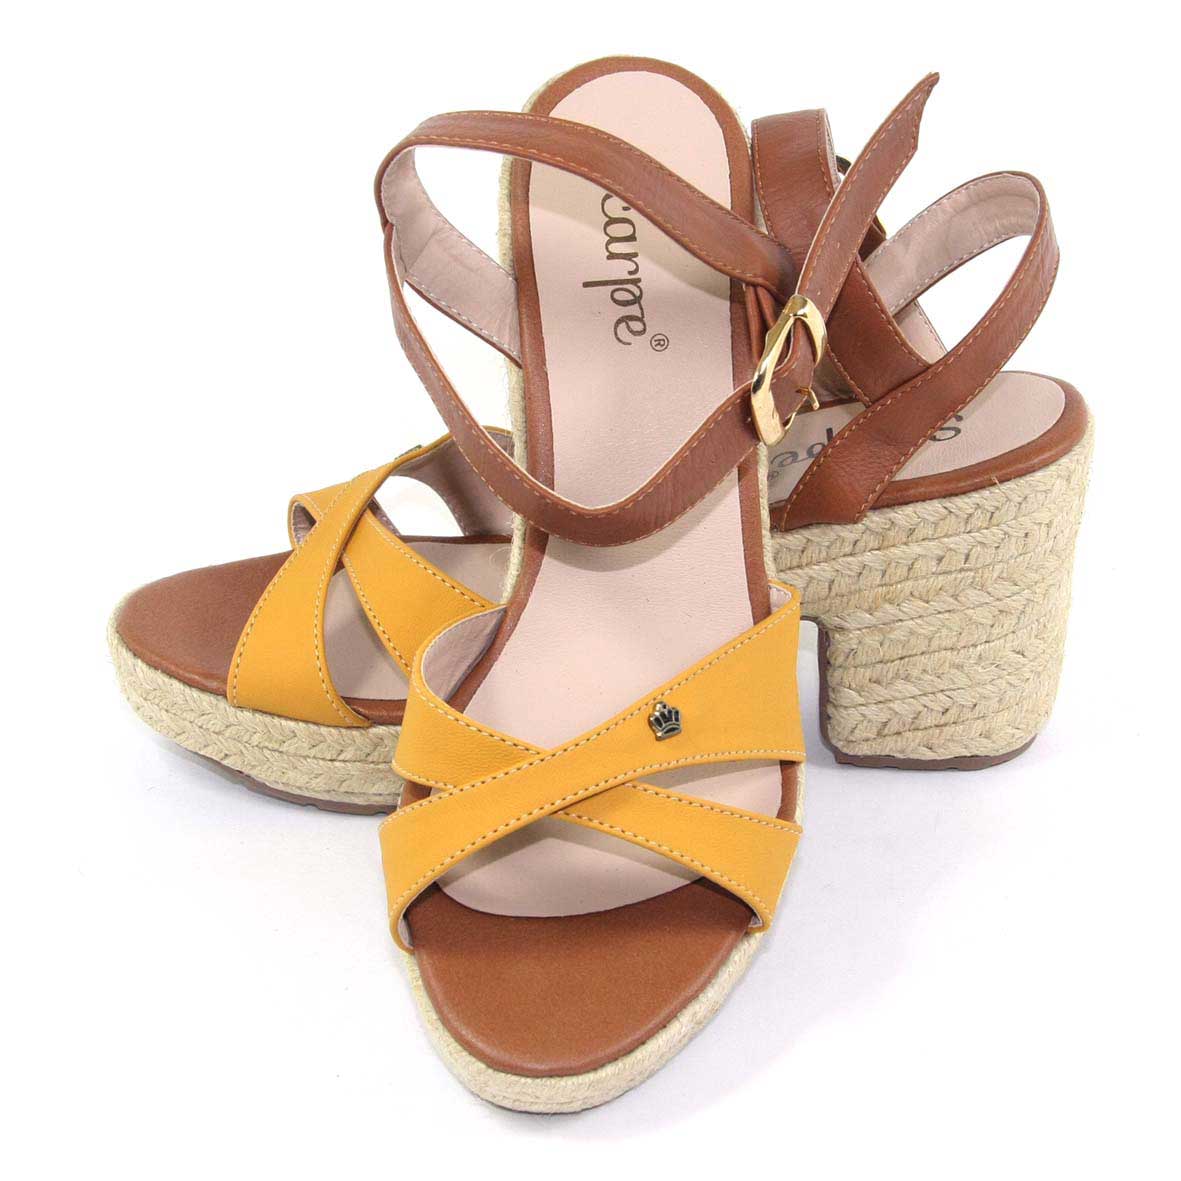 Sandalias para mujer color amarillo con tacón y correa ajustable